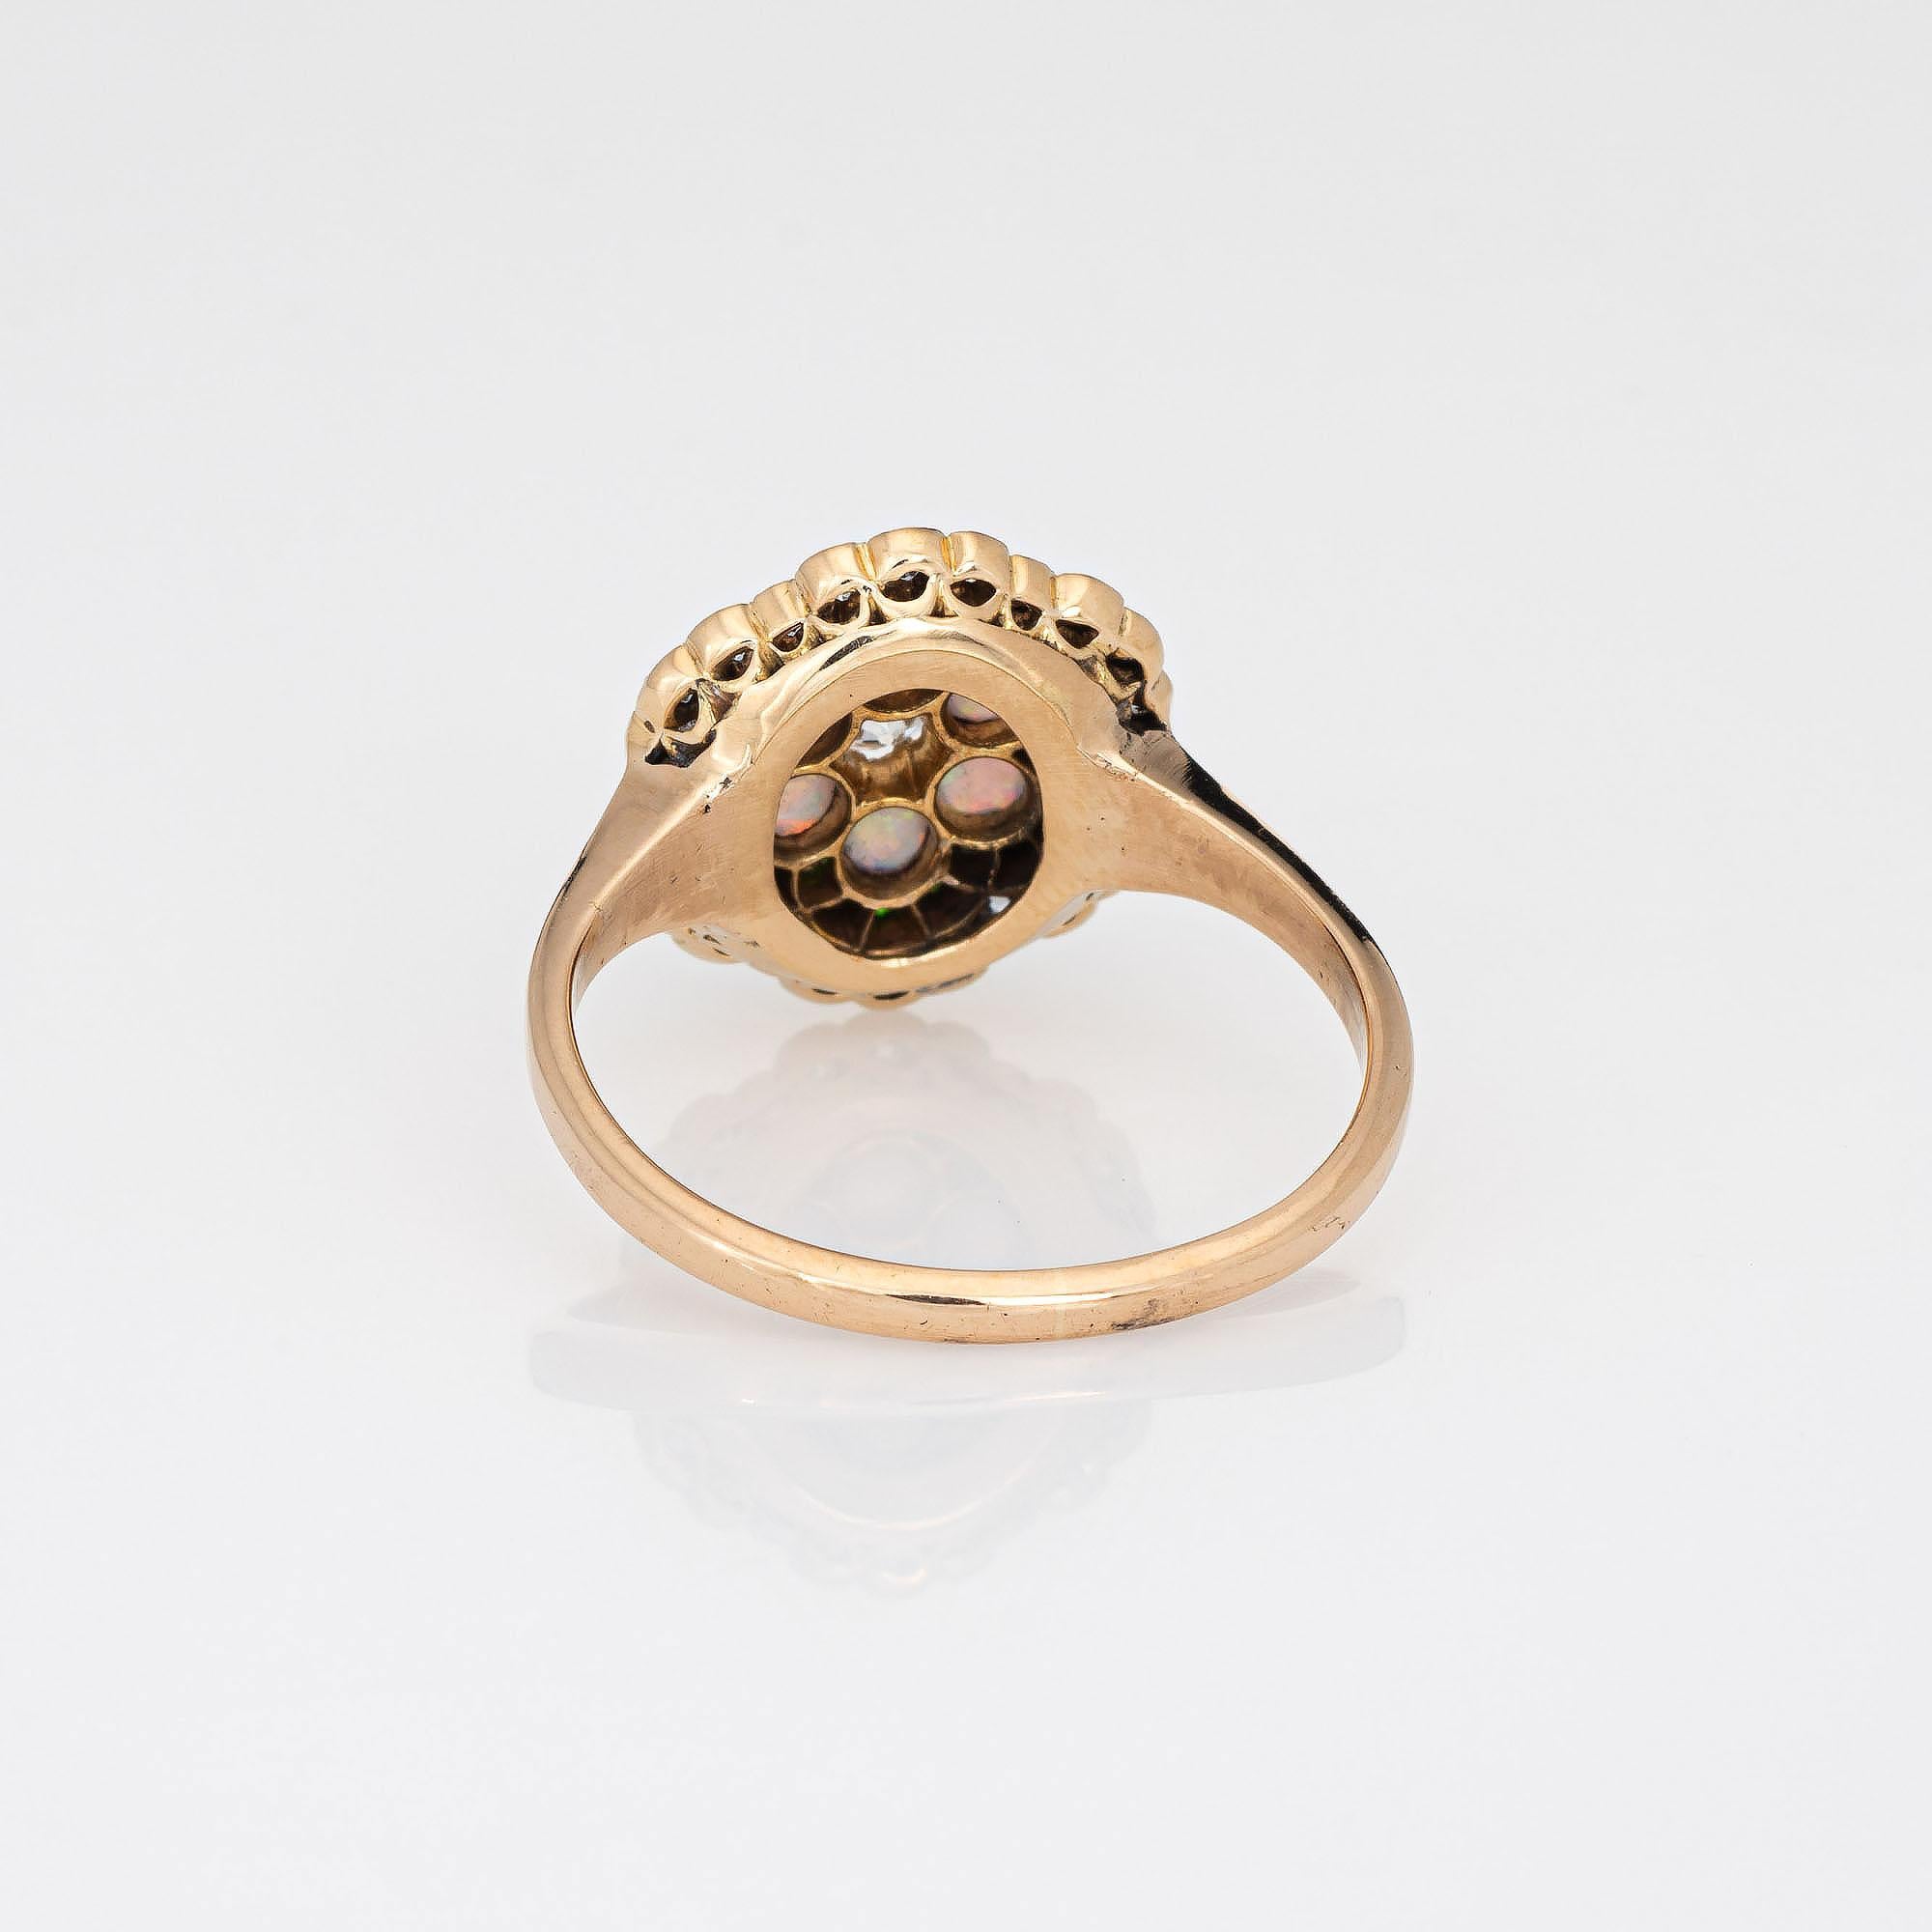 Women's Antique Edwardian Opal Diamond Ring Demantoid Garnet 18k Yellow Gold Jewelry